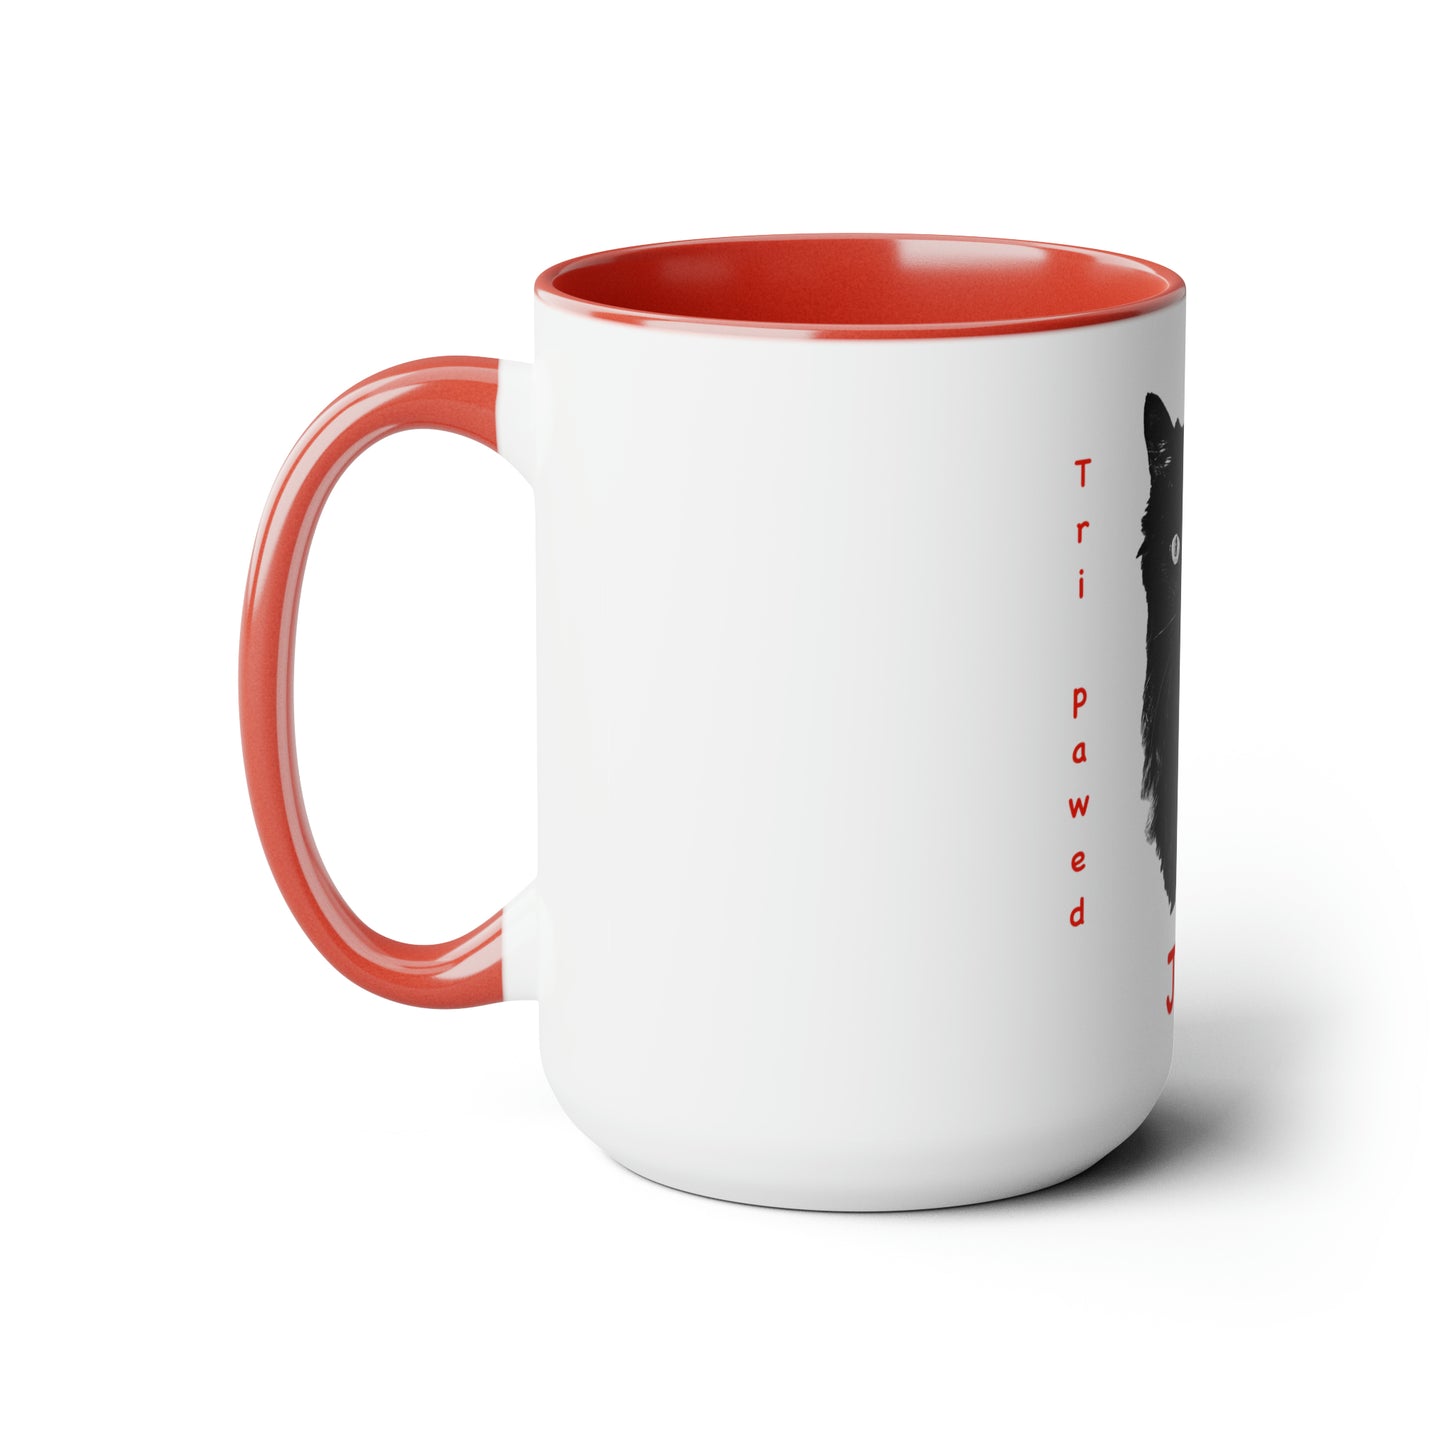 Jett Version 2 Two-Tone Coffee Mug, 15oz